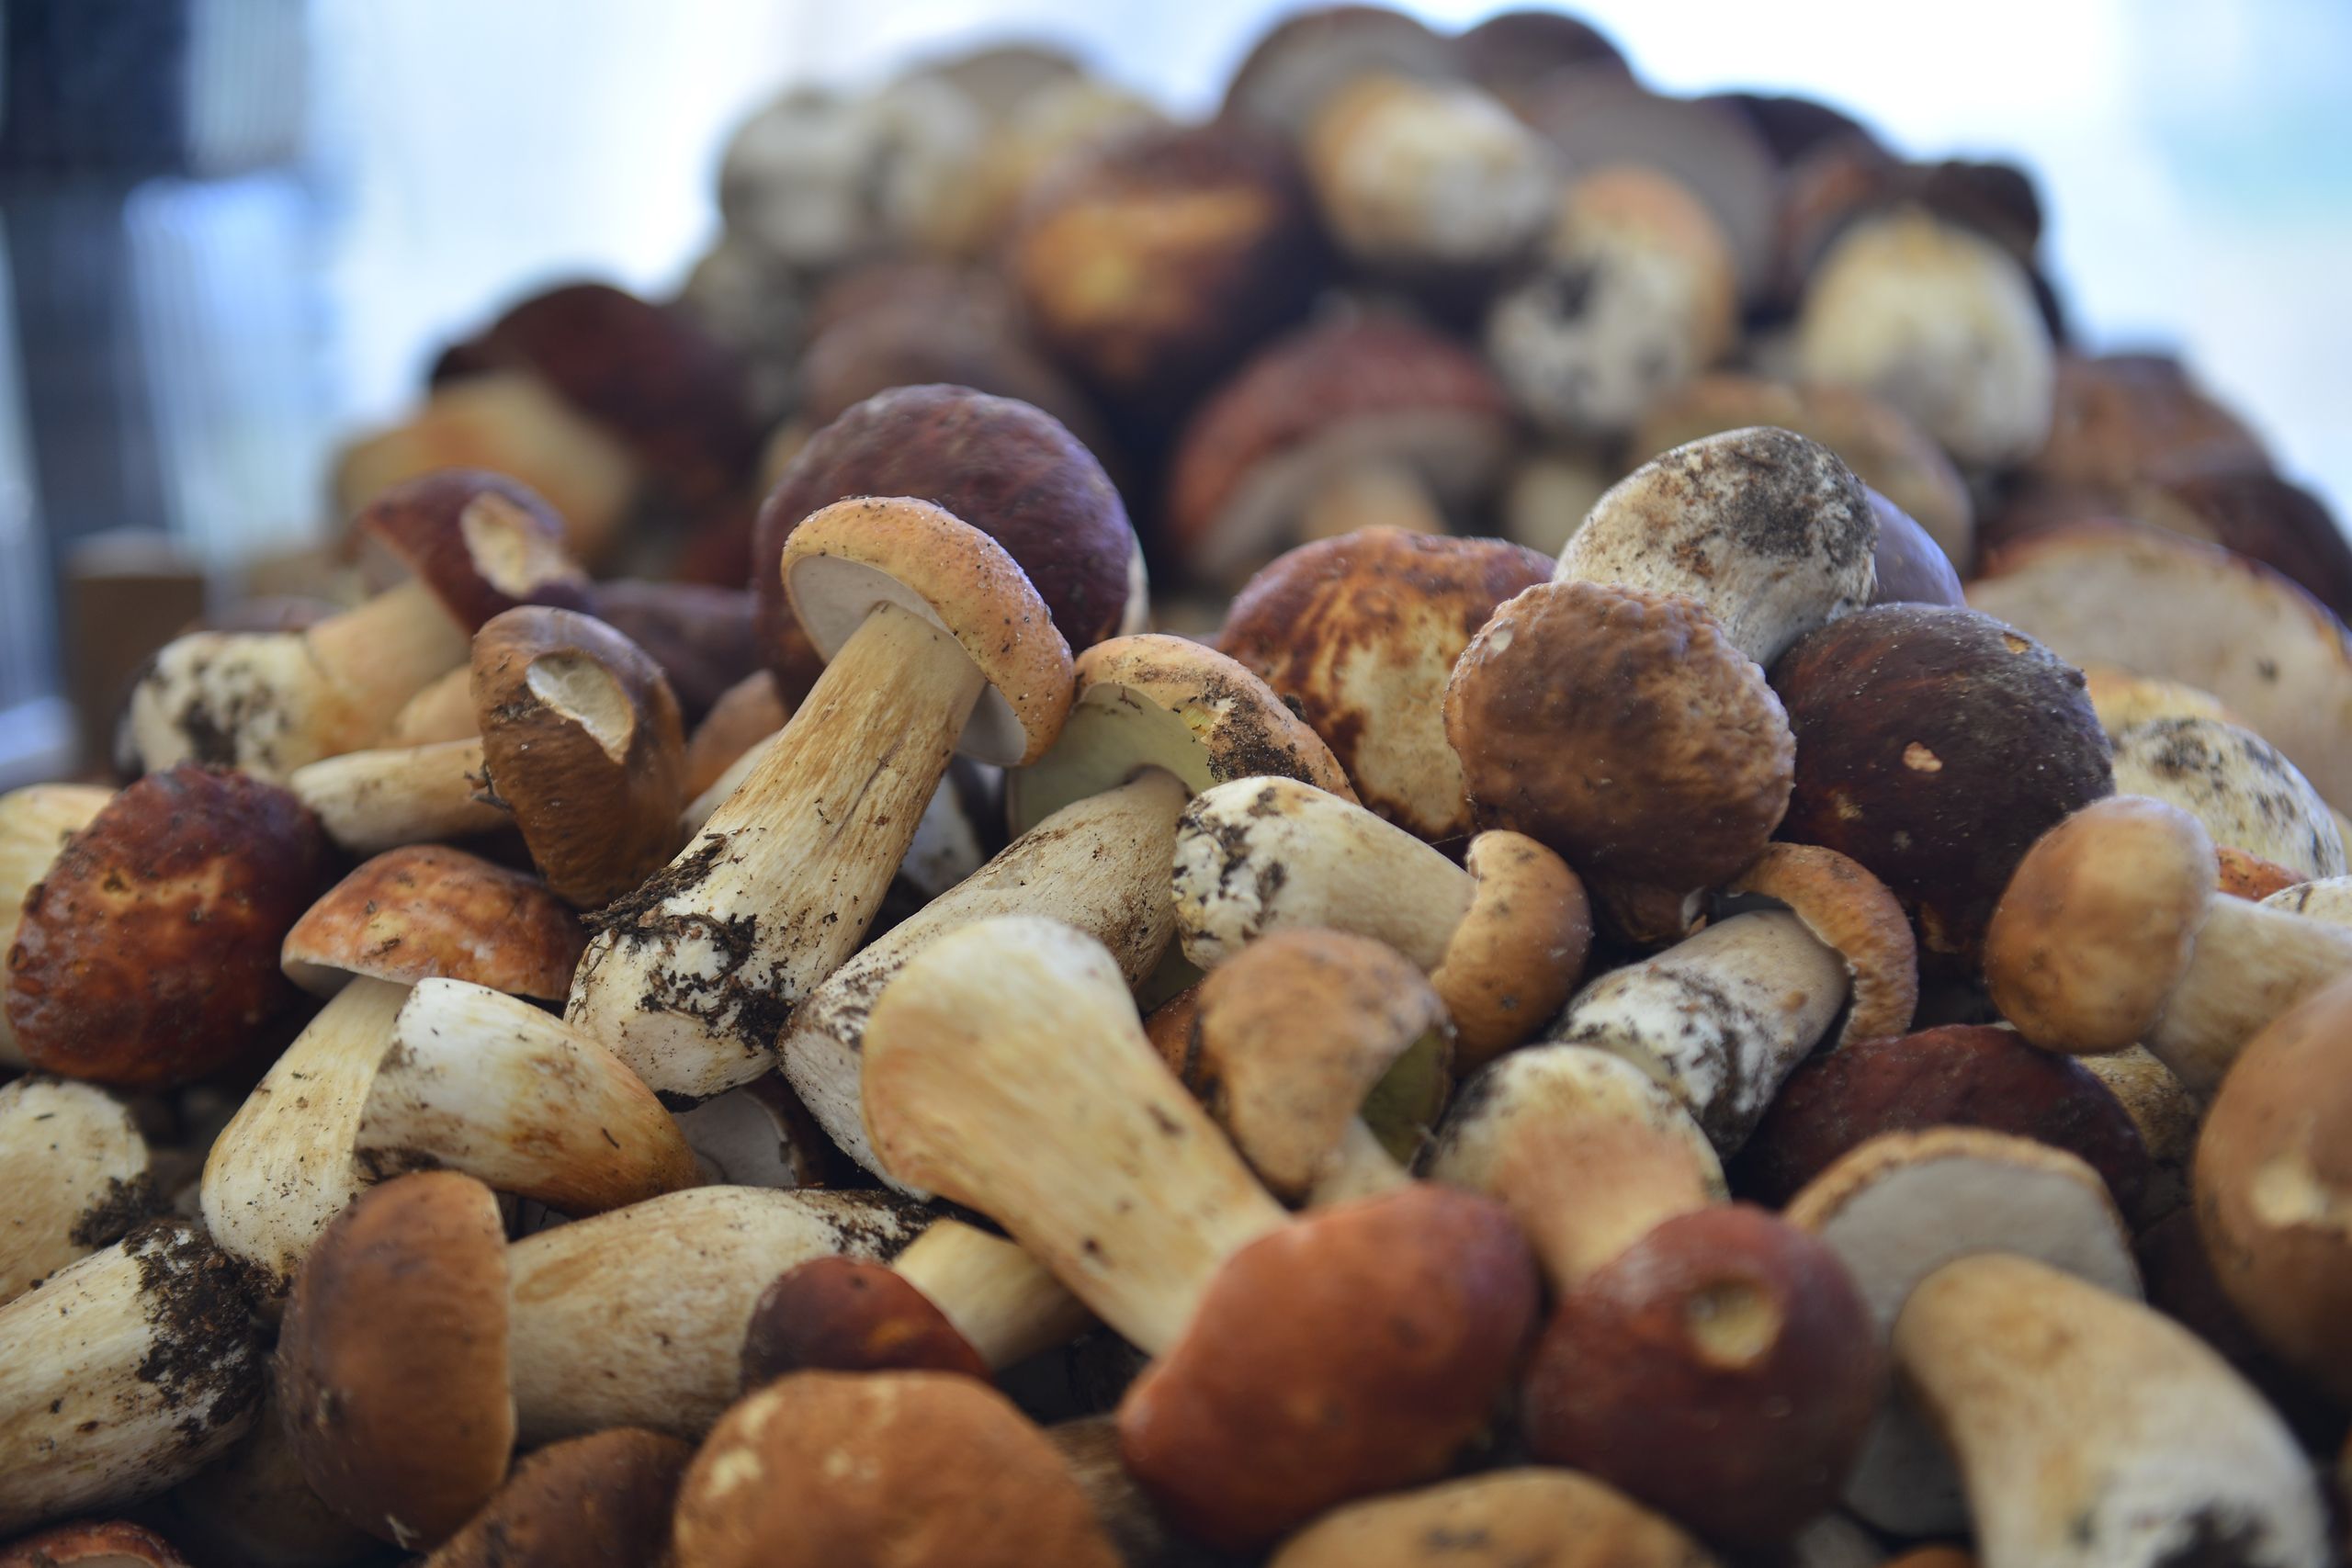 Порция готовых грибов не должна превышать 100-120 граммов. Фото: Наталья Феоктистова